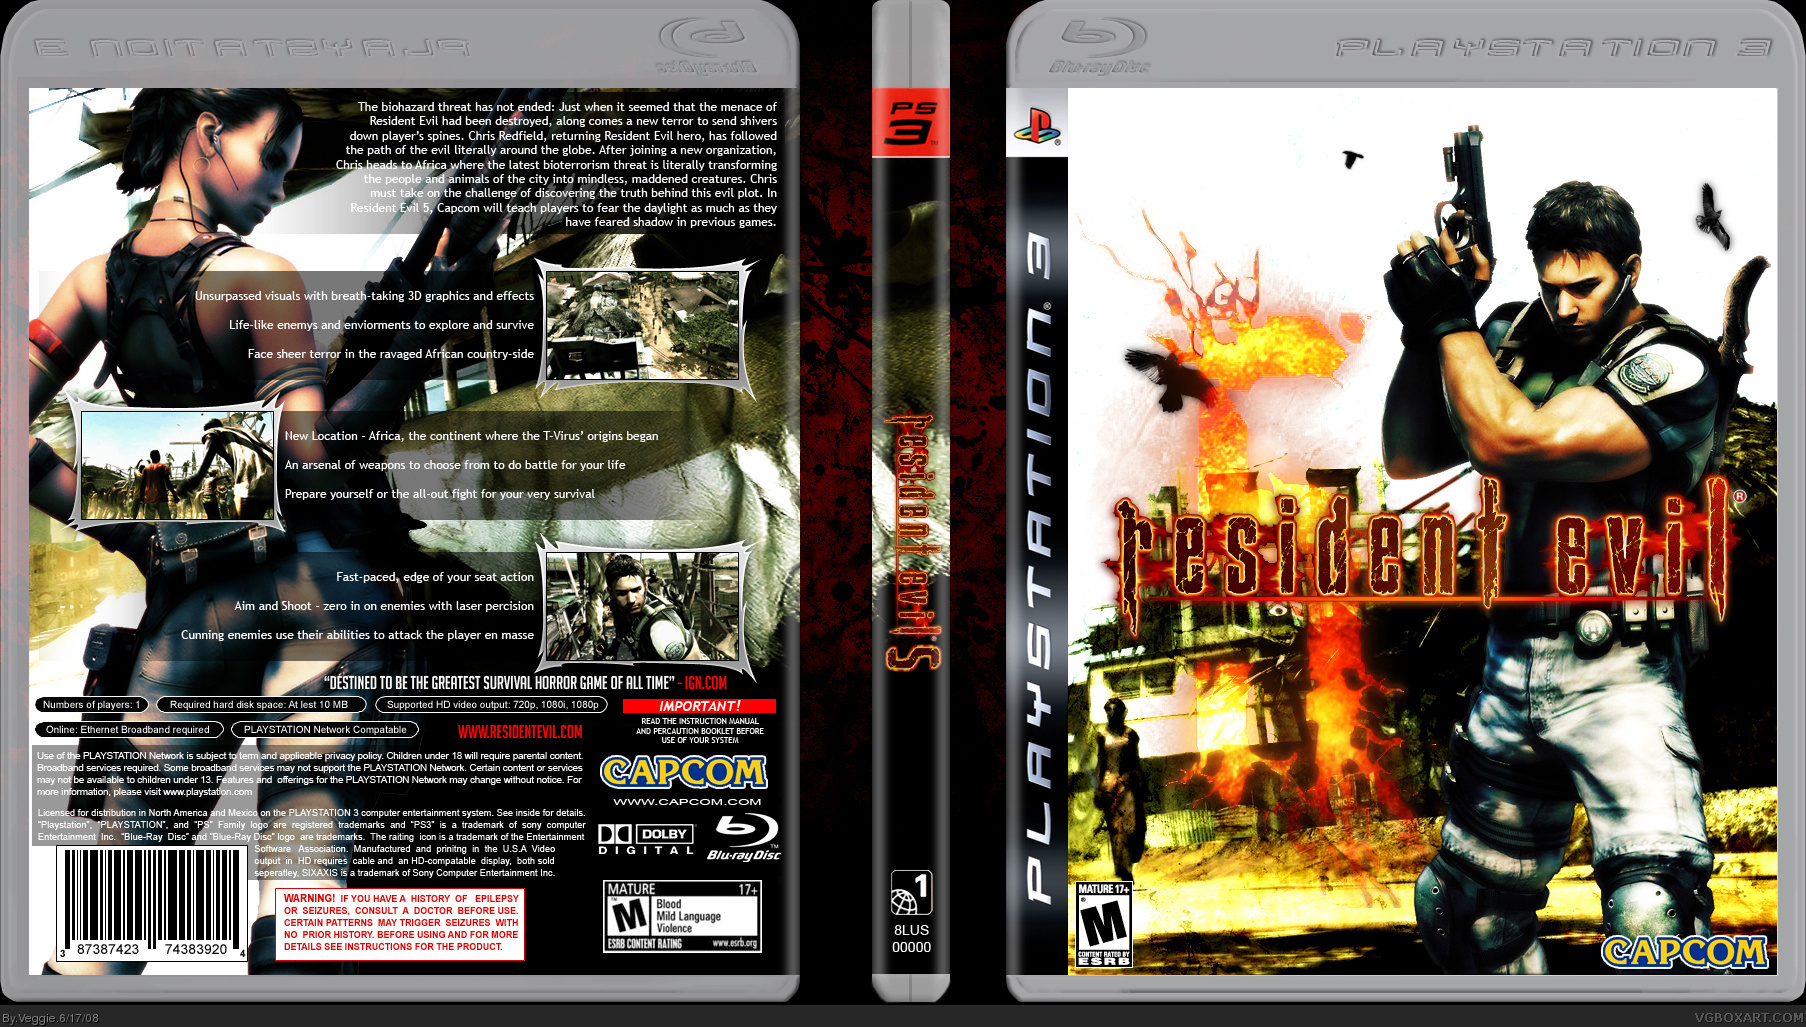 Resident Evil  5 box cover